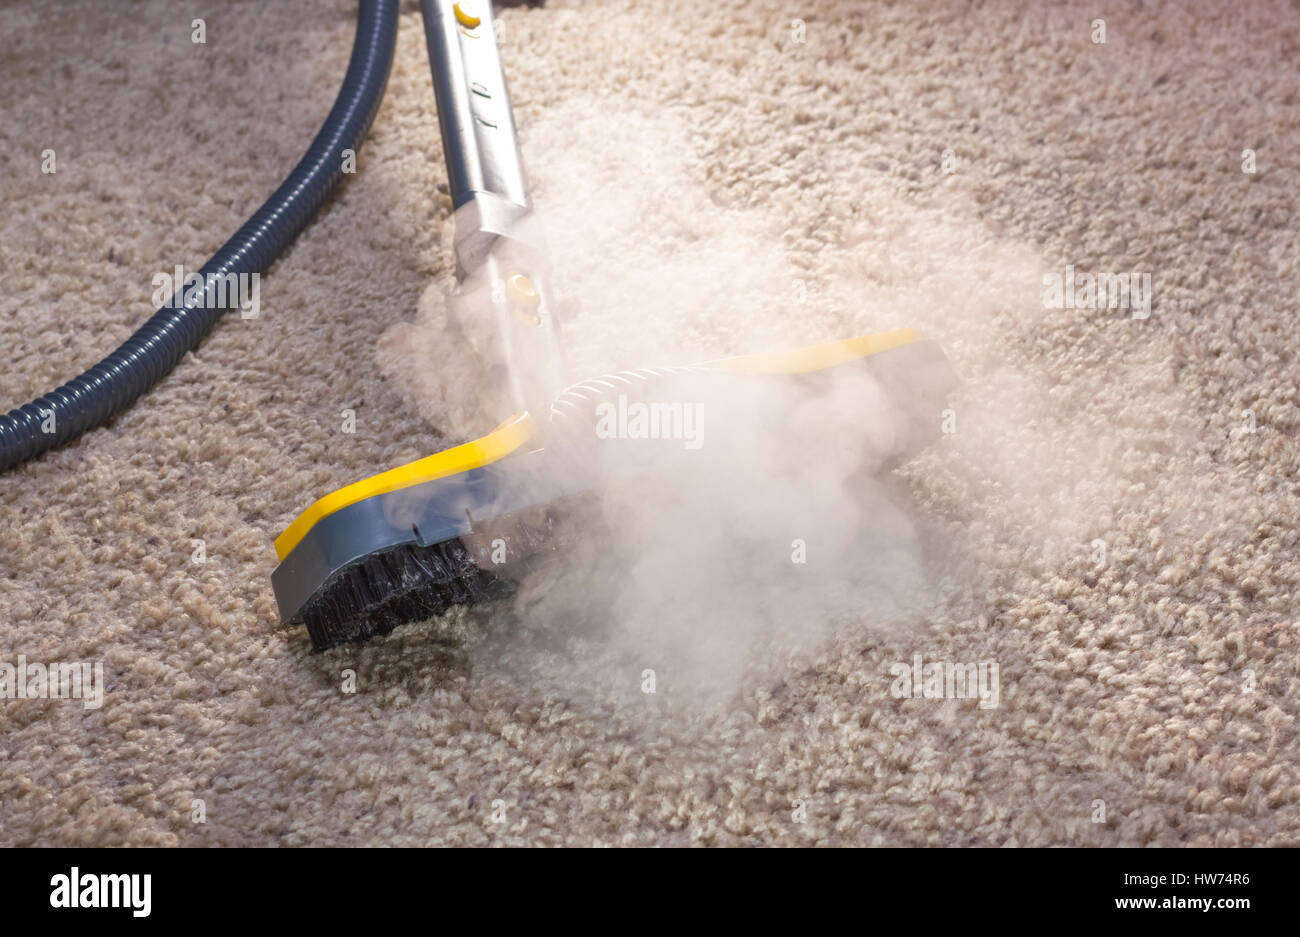 En utilisant un nettoyeur à vapeur sèche pour nettoyer les tapis de sol. Banque D'Images